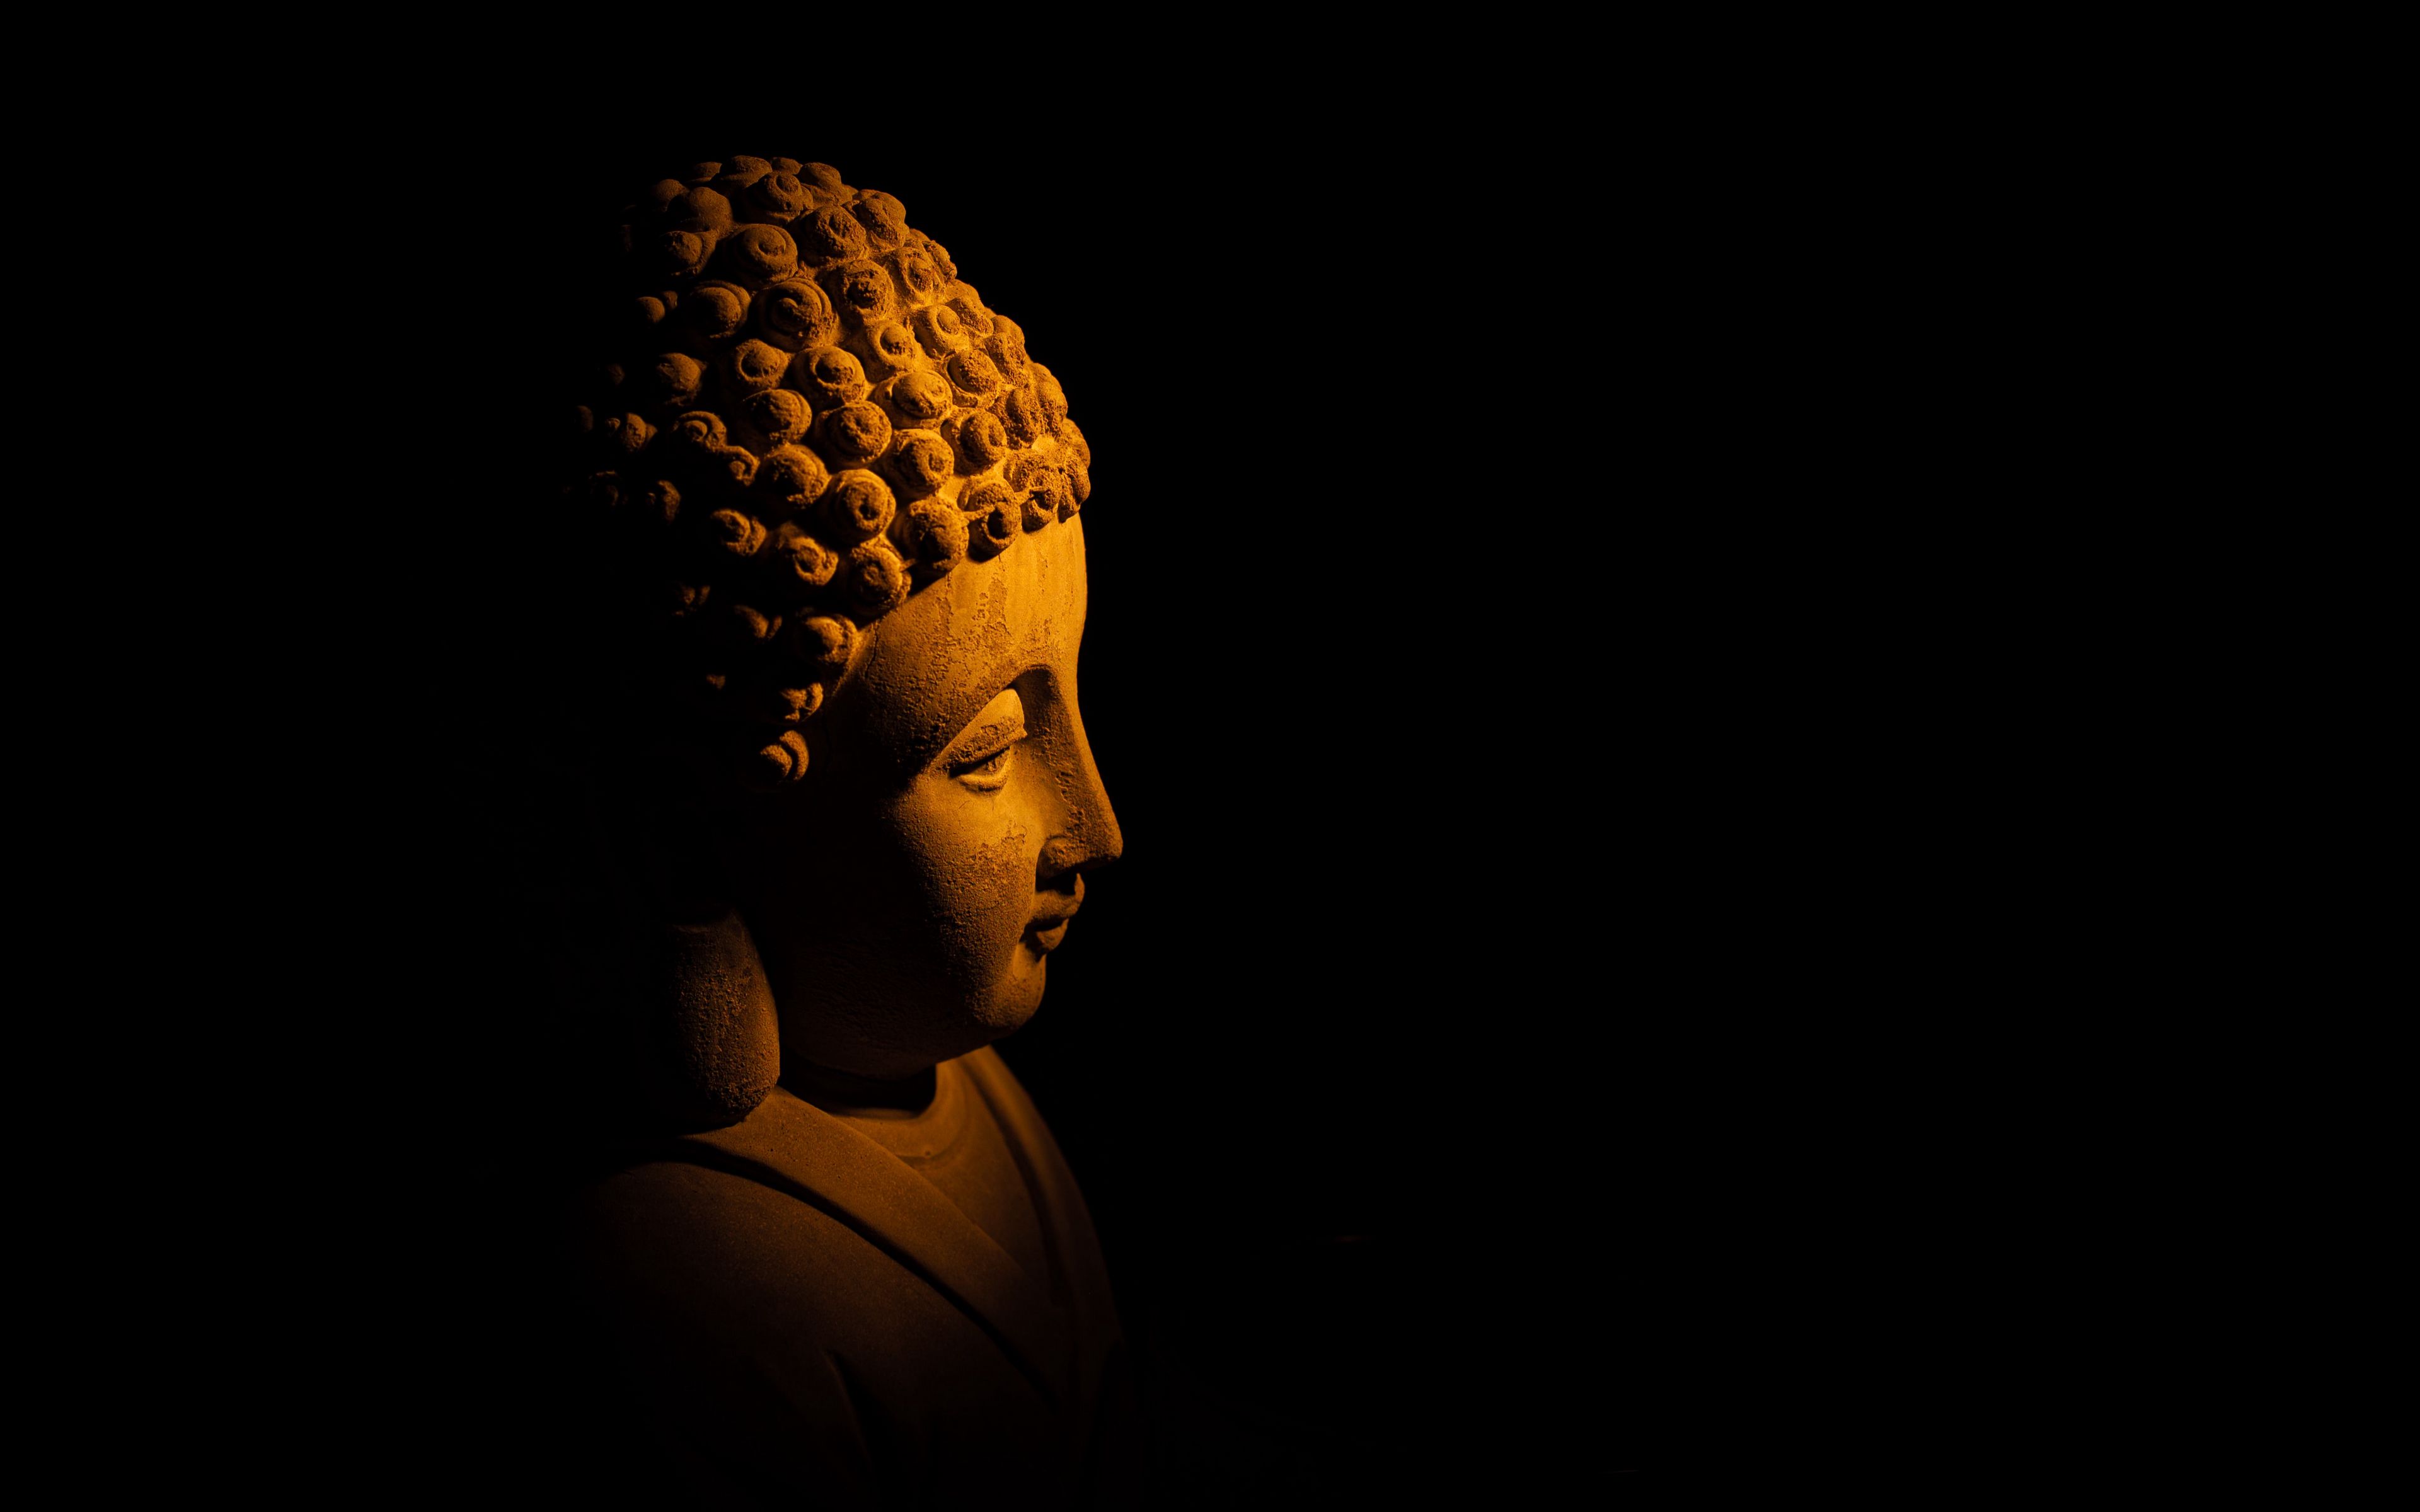 Download wallpaper 3840x2400 buddha, statue, dark 4k ultra hd 16:10 hd